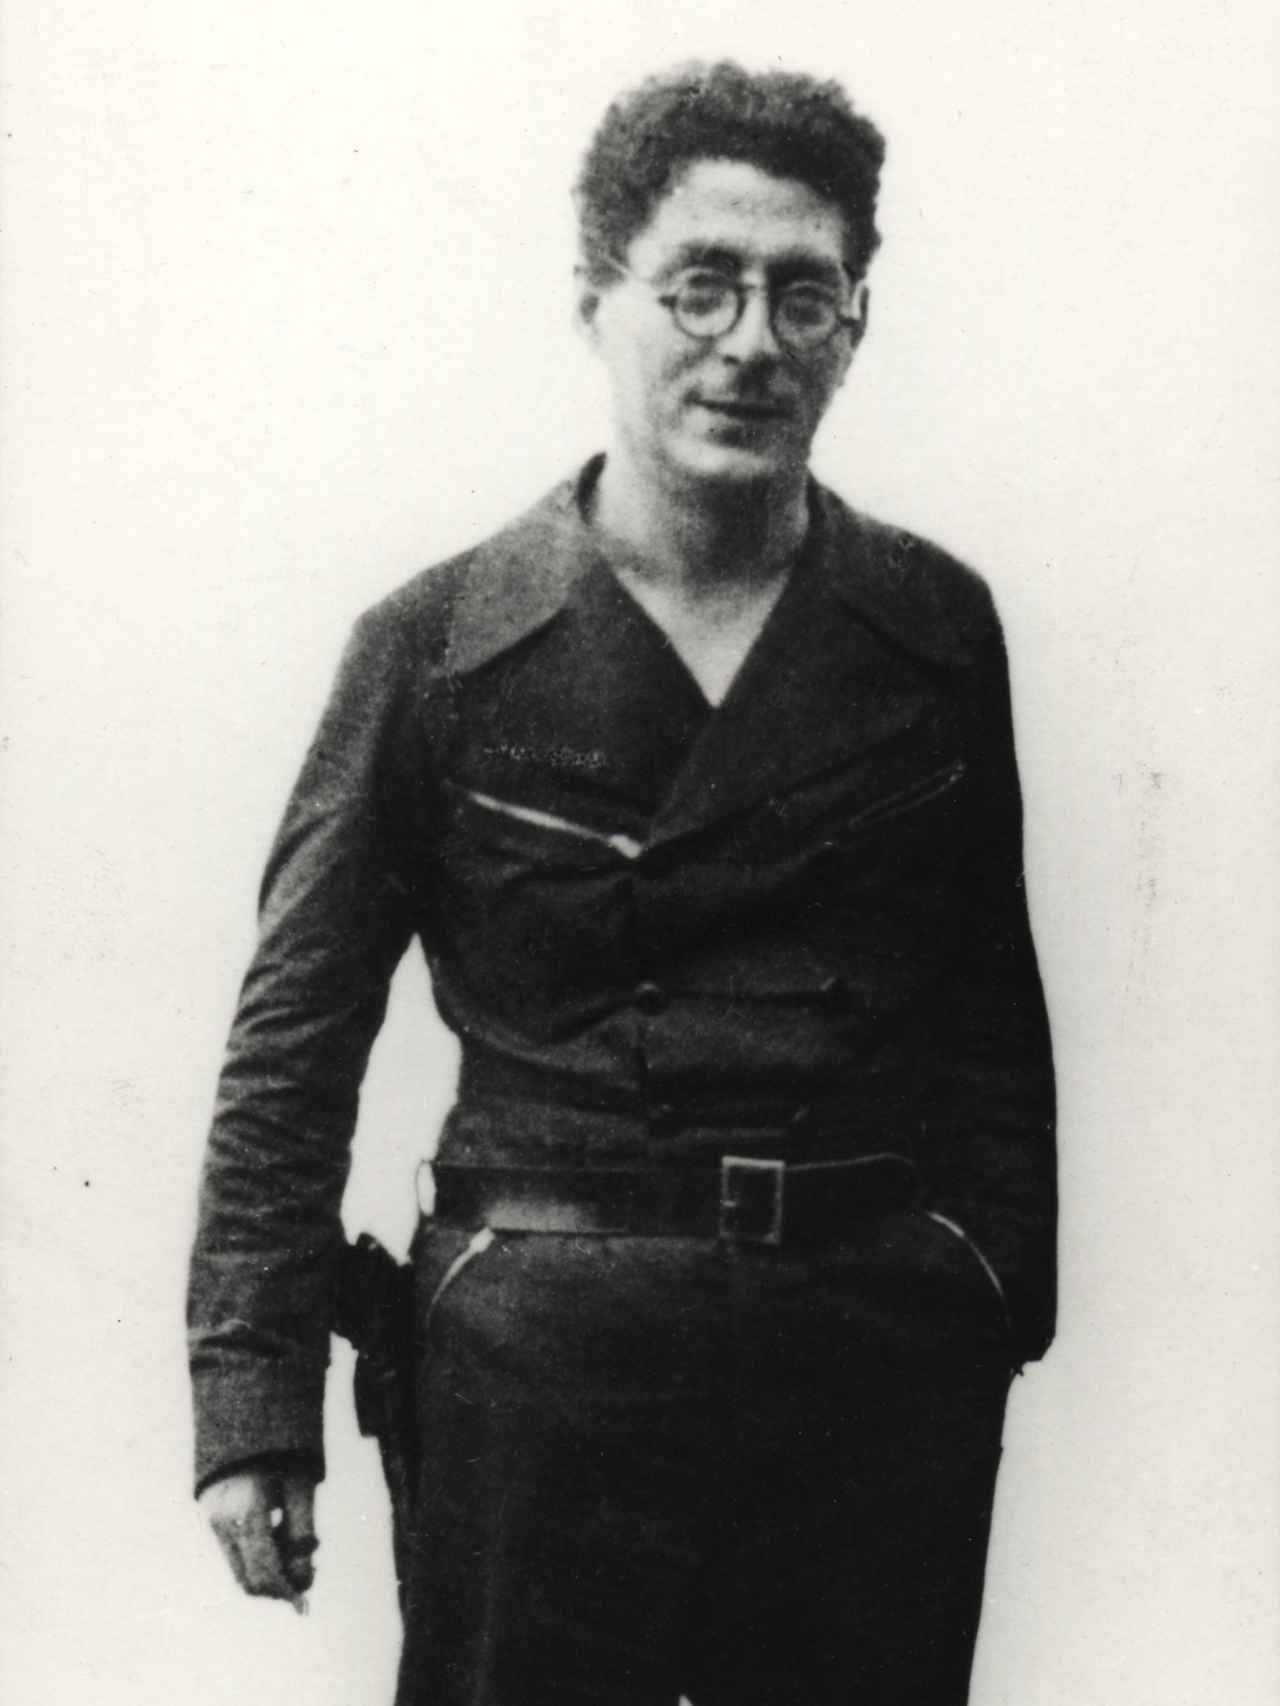 Andreu Nin, líder del POUM asesinado por los comunistas.